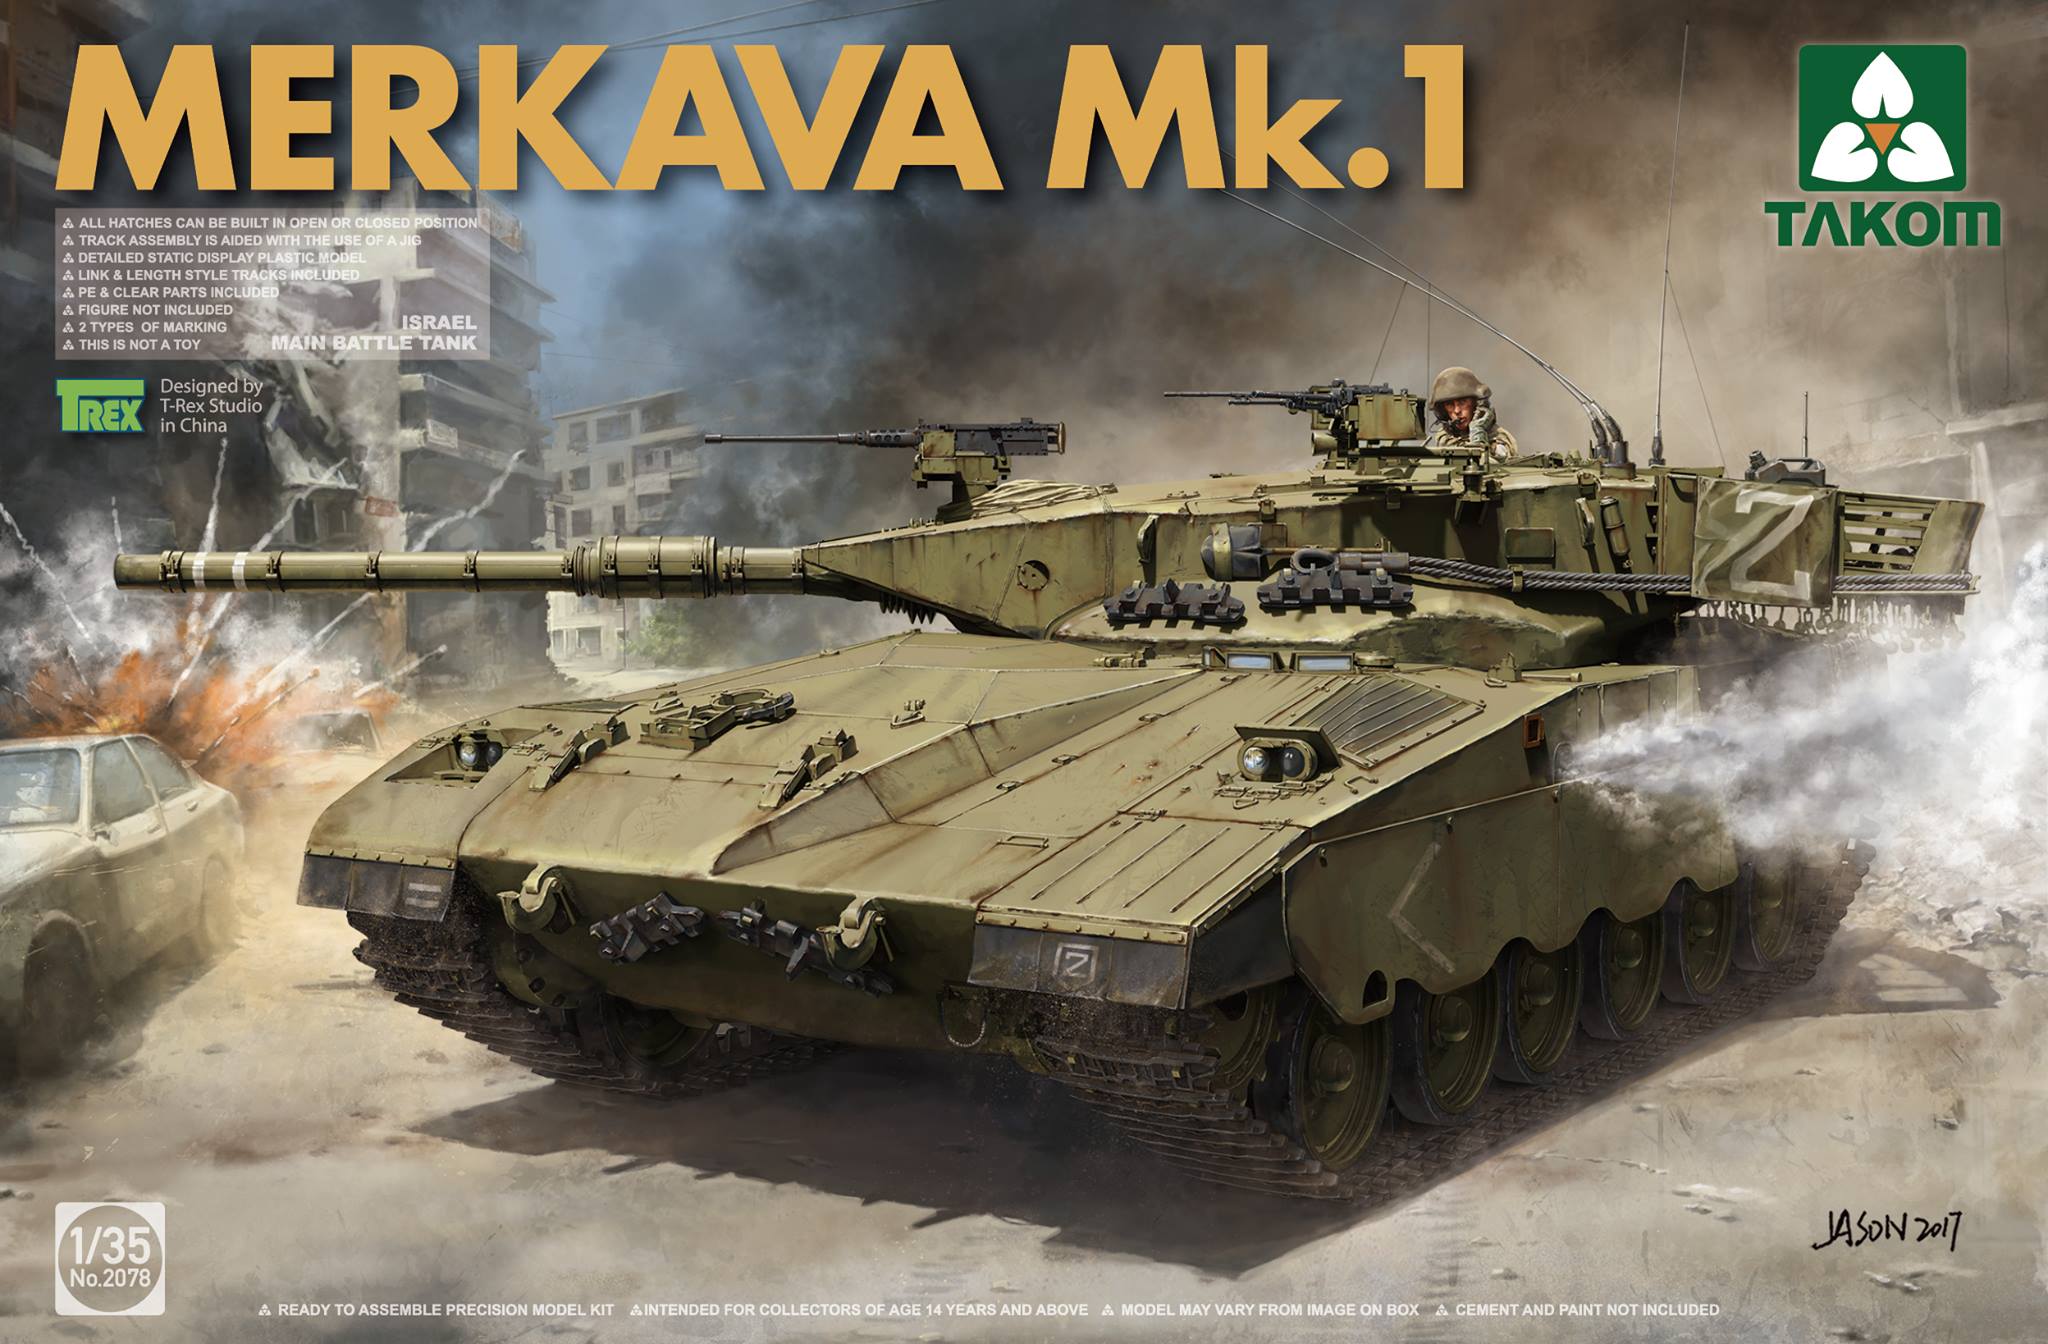 Israel Main Battle Tank Merkava Mk.1